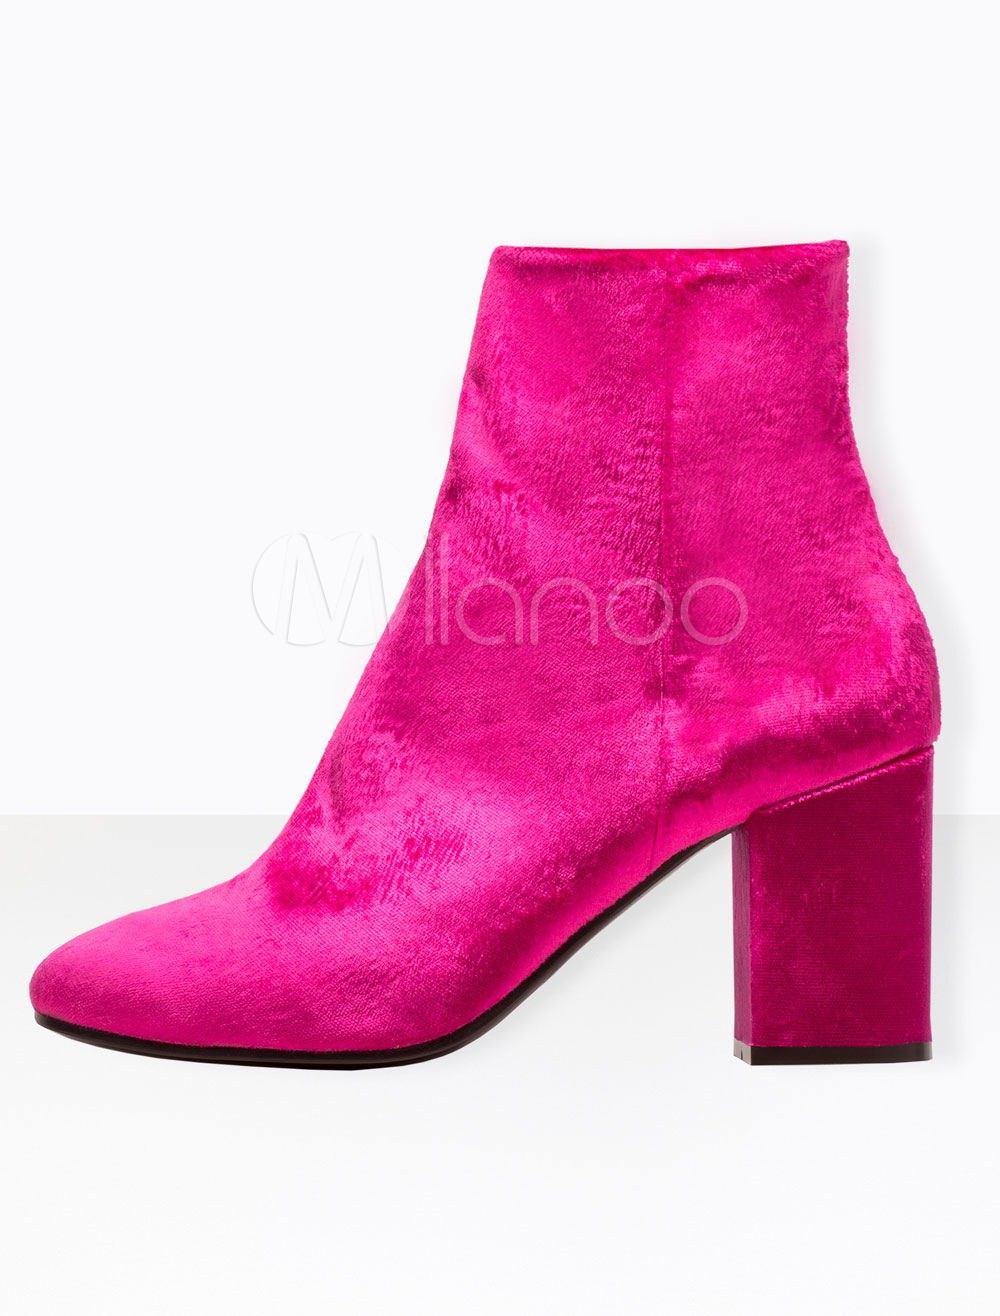 Rose Ankle Boots High Heel Women's Velvet Pointed Toe Chunky Heel ...